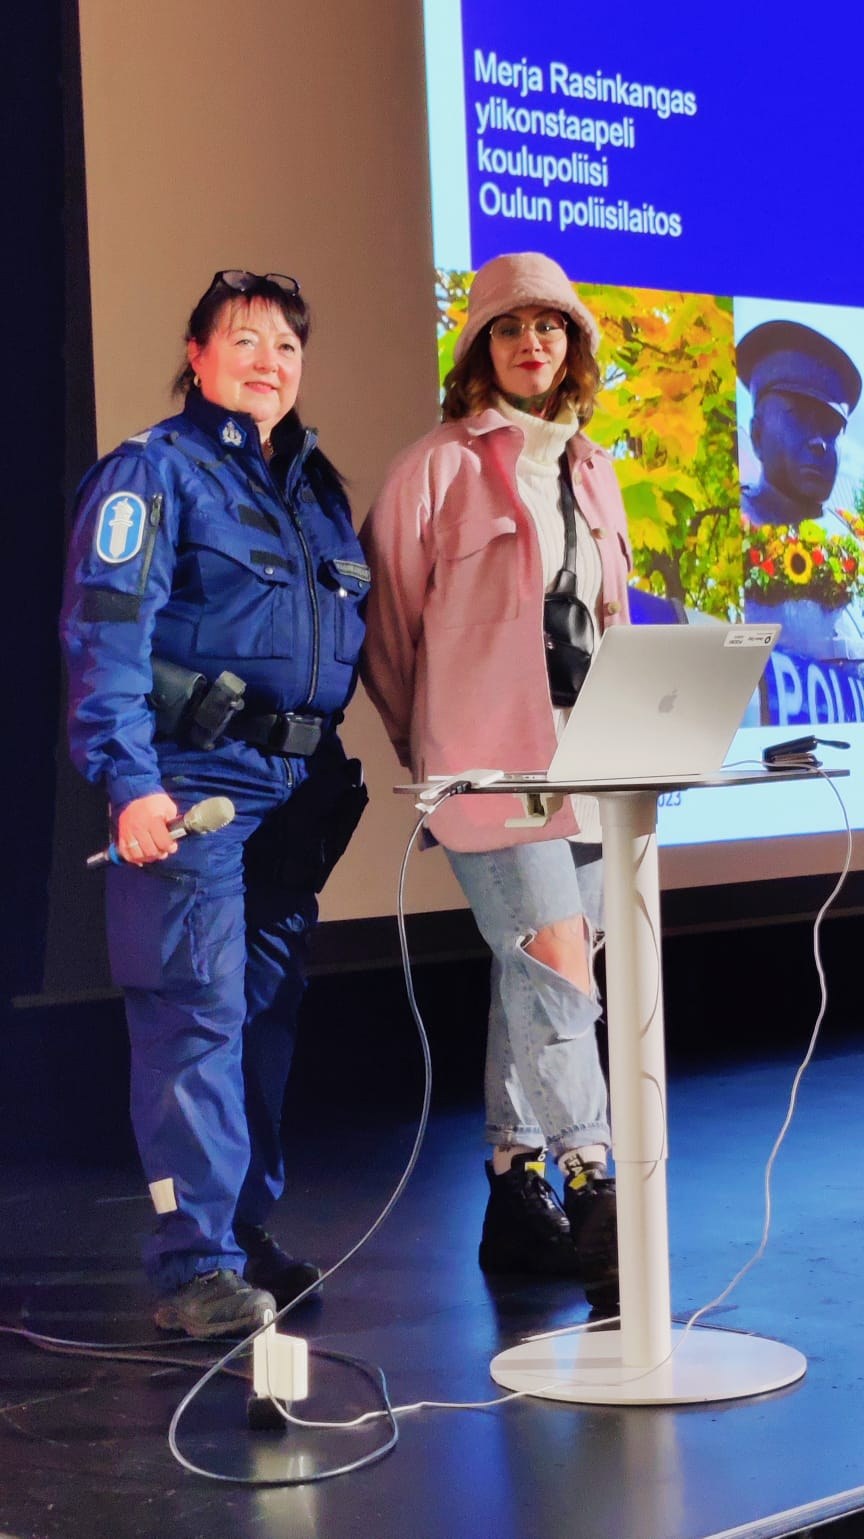 Sana koulupoliisin kaverina pitämässä laillisuuskasvatusta Pohjankartanon koulun oppilaille